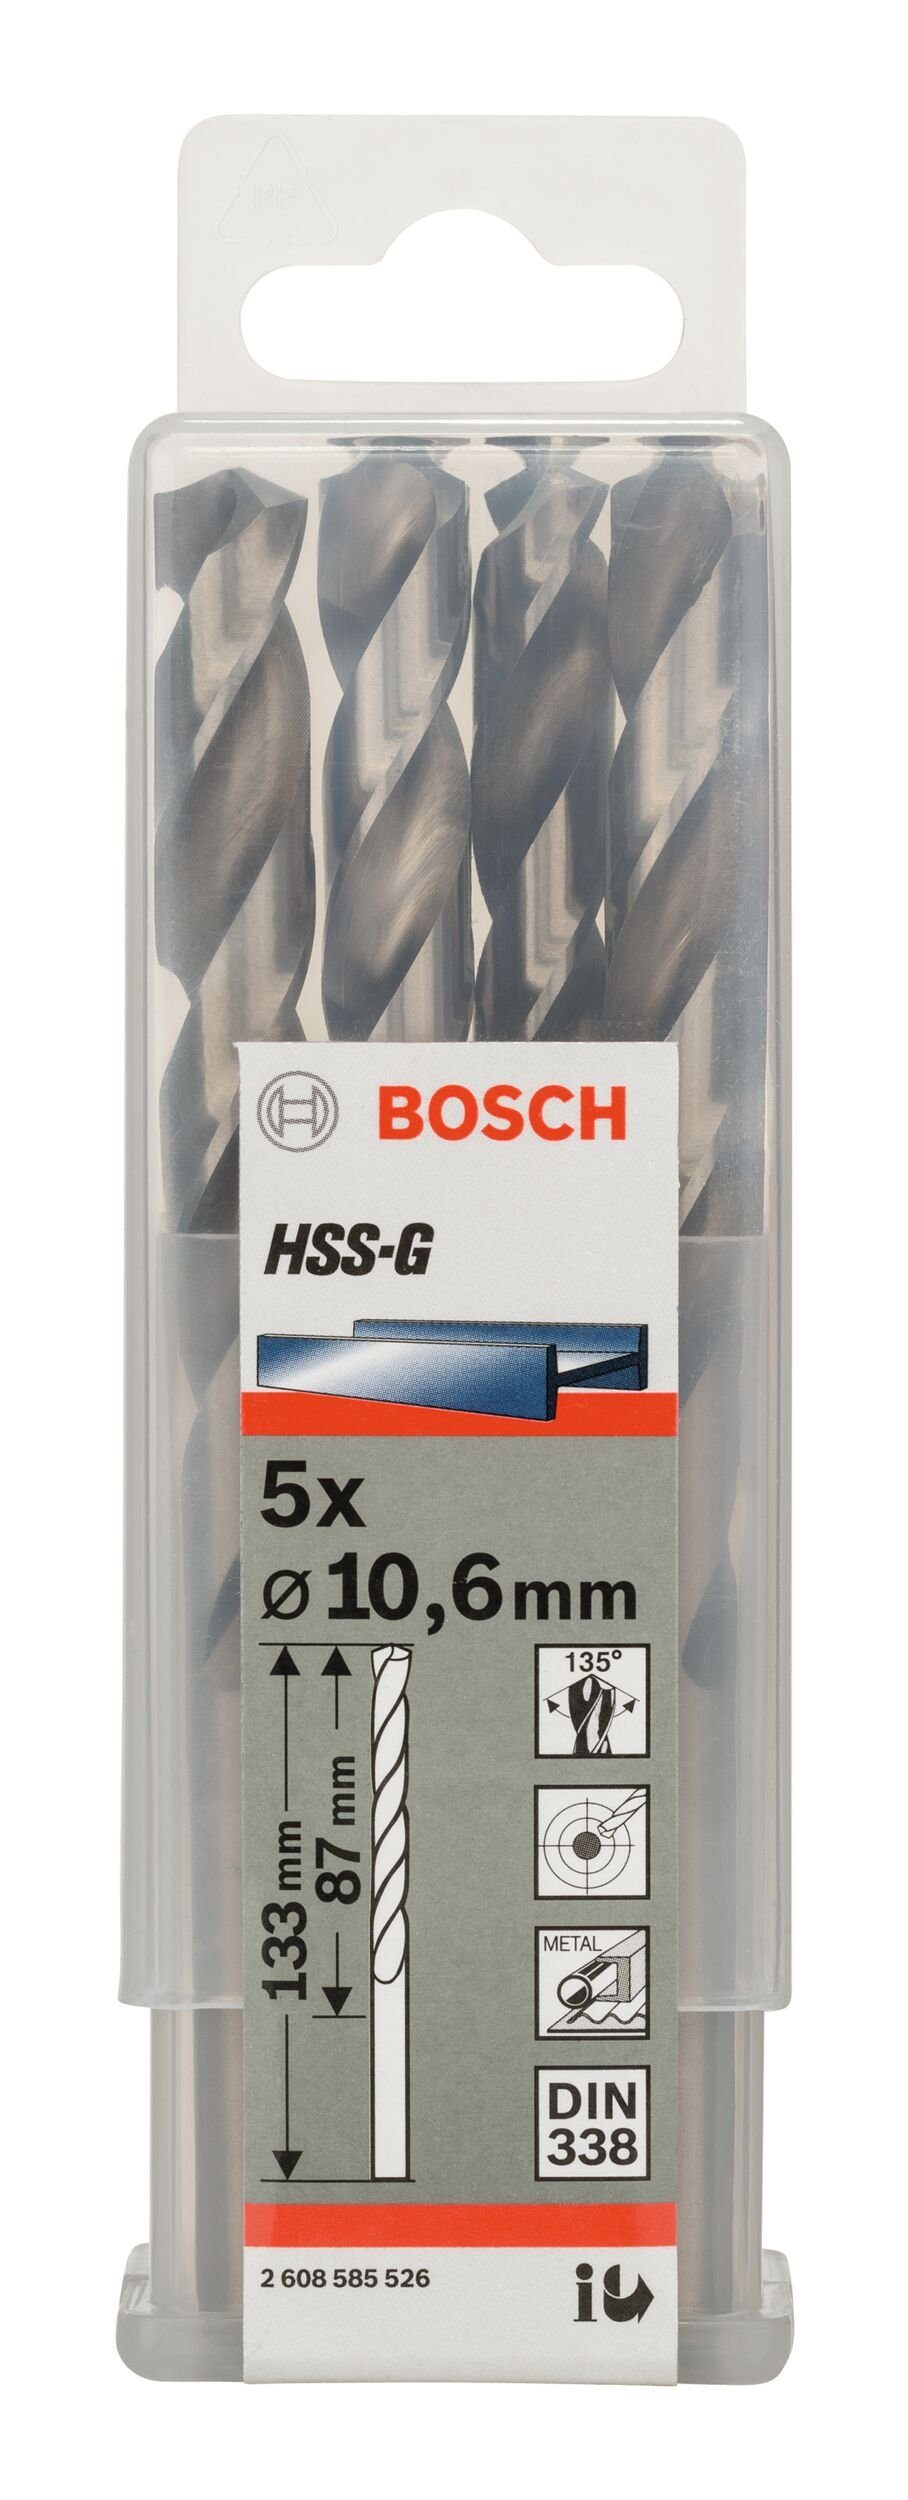 BOSCH Metallbohrer, (5 Stück), 133 - 10,6 - mm 338) 5er-Pack x x 87 (DIN HSS-G